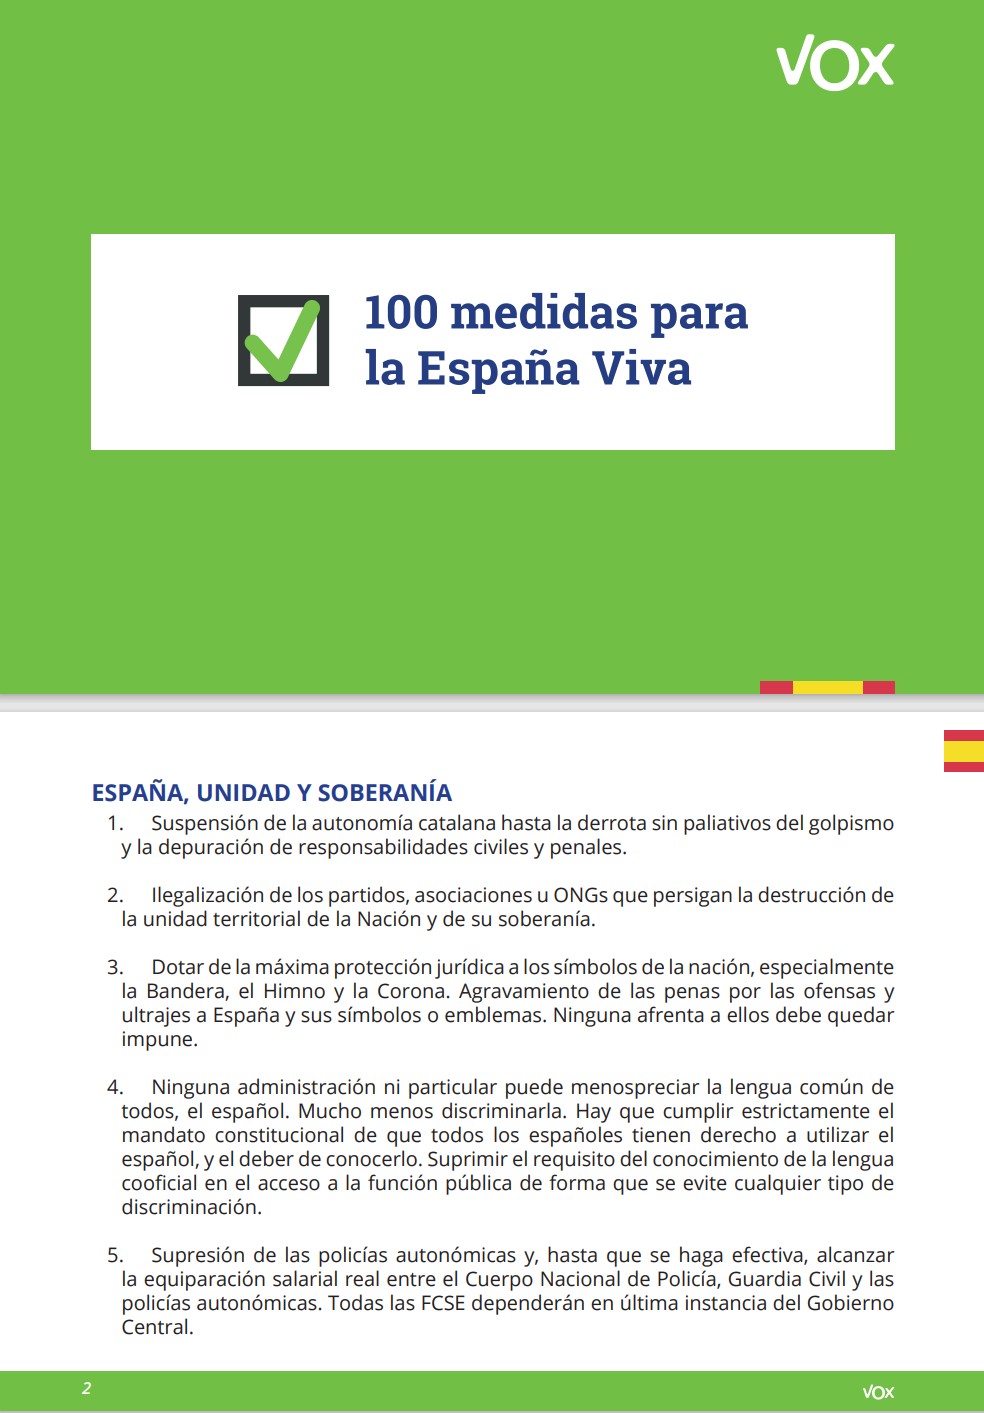 Estos son los 5 primeros puntos del programa electoral que VOX ha presentado para las elecciones de Andalucía